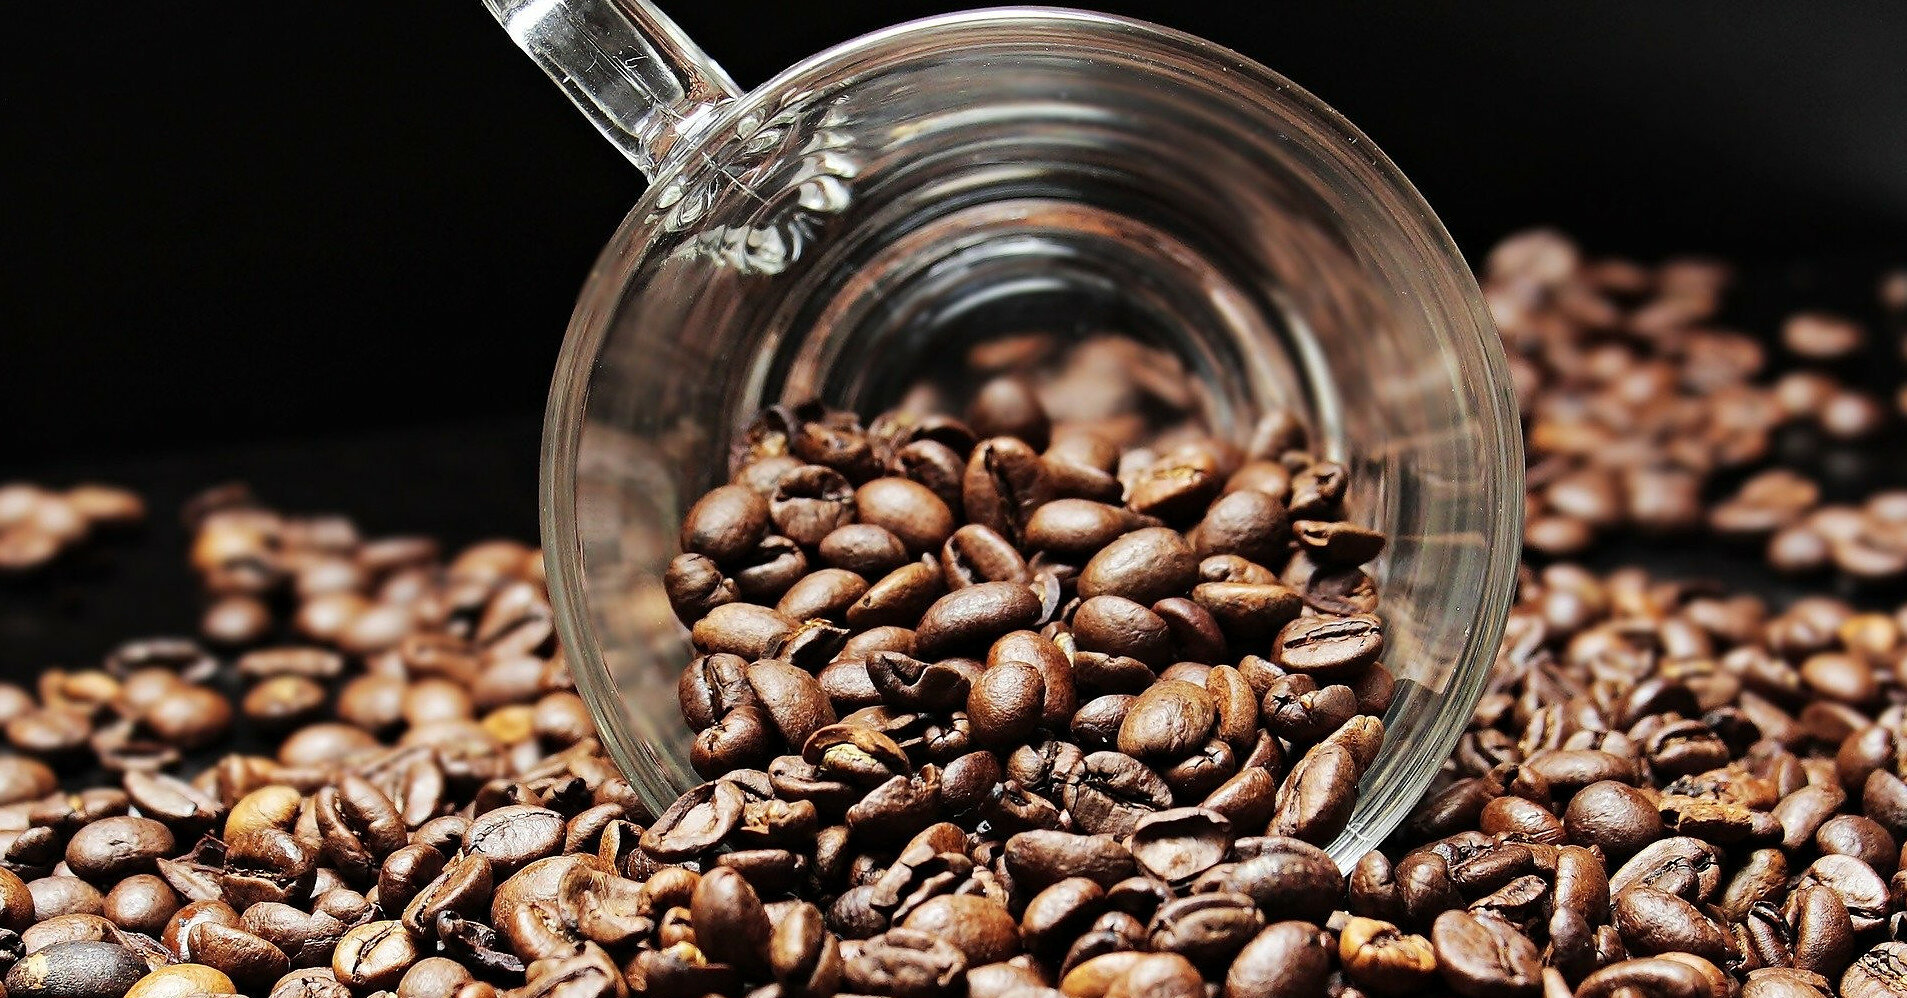 Цены на кофе во всем мире останутся высокими